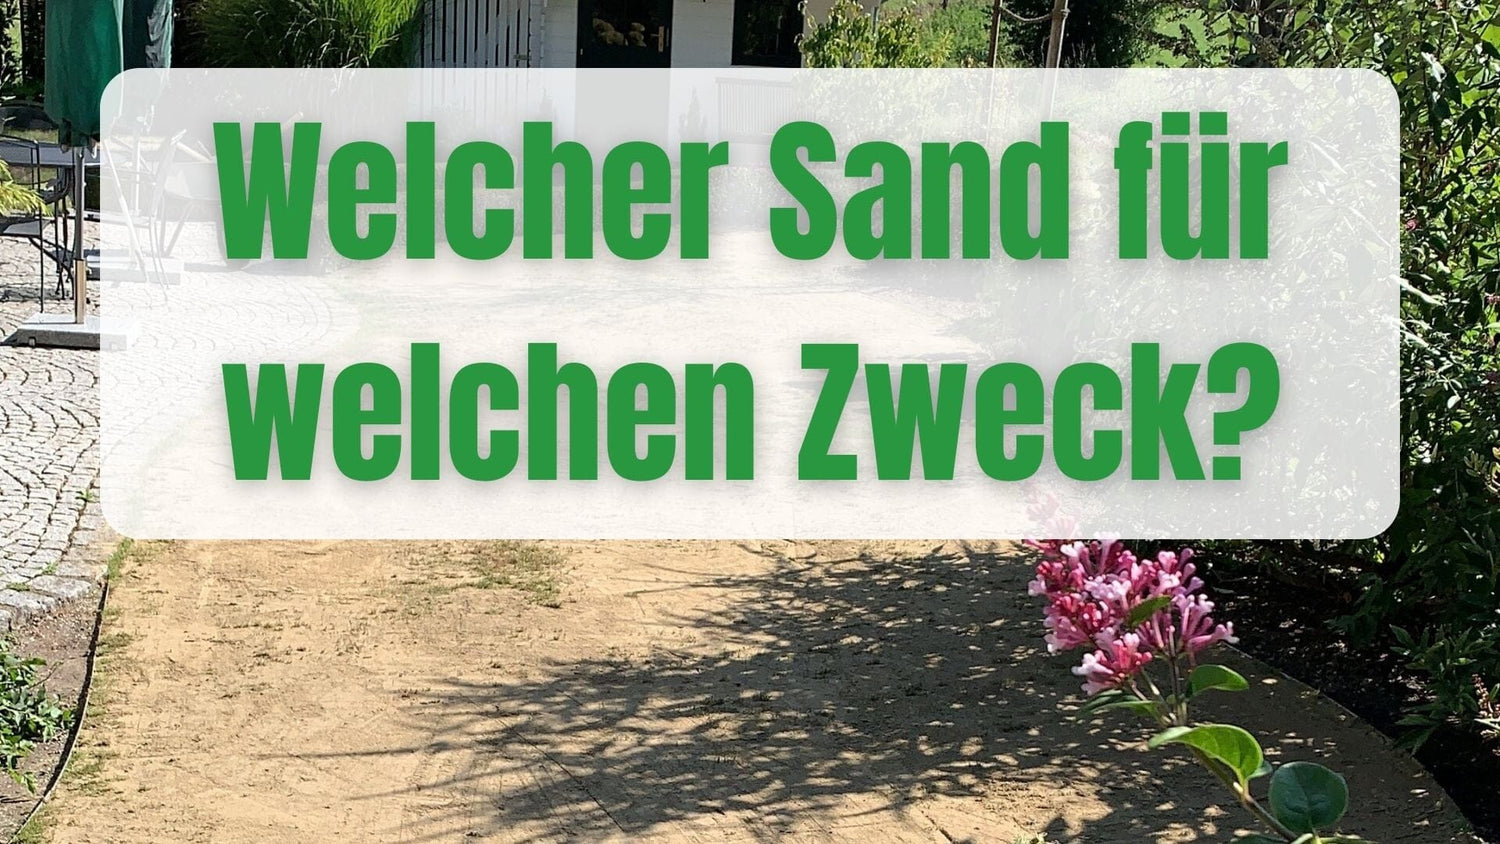 Welcher Sand zum Rasen sanden?